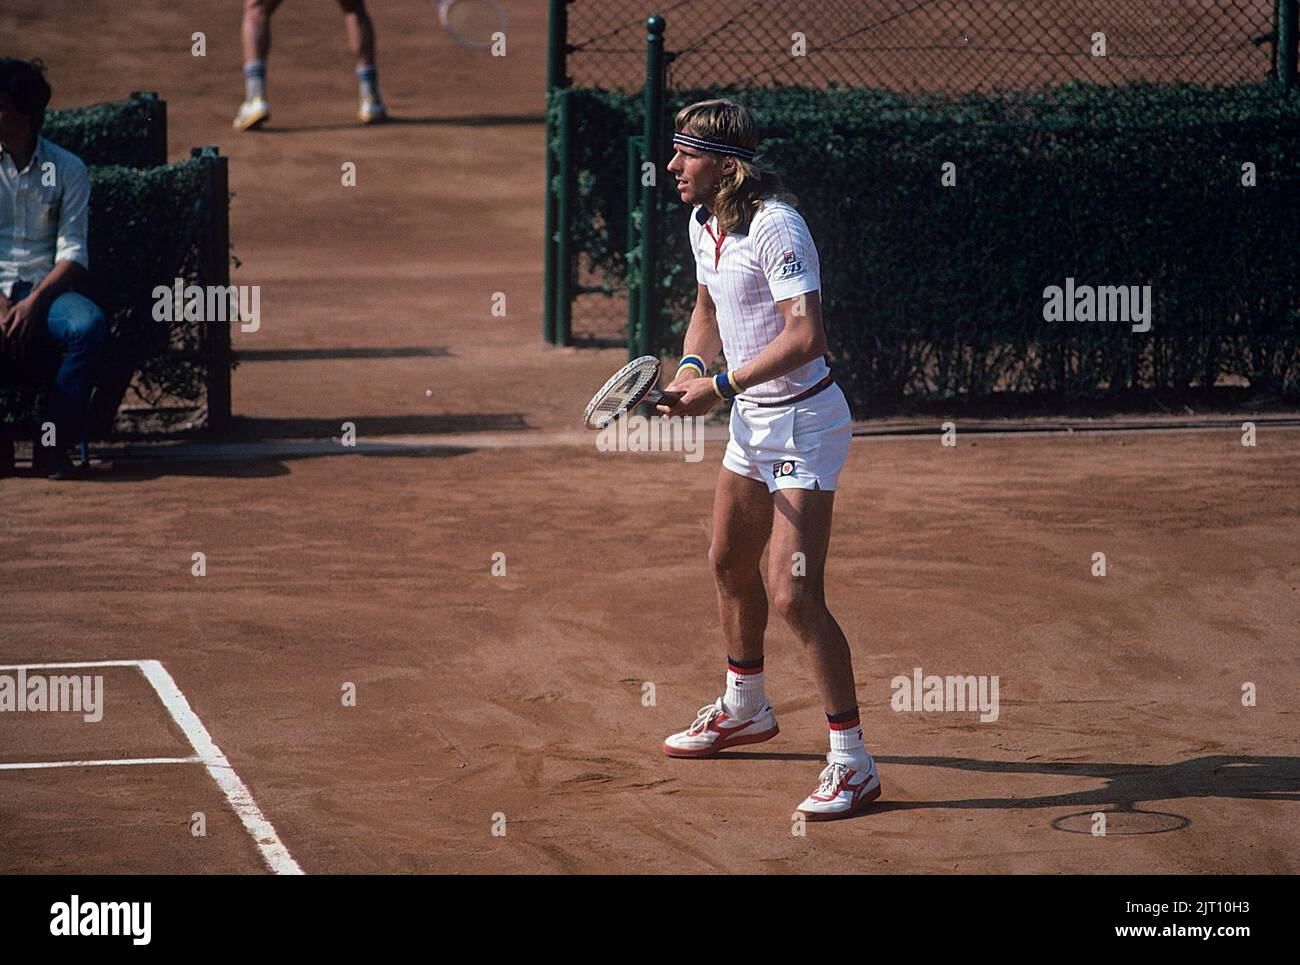 Bjorn Borg. Ehemaliger Welt kein 1 Tennisspieler geboren 6 1956. juni. Er war der erste Mann in der Open-Ära, der 11 Grand-Slam-Einzeltitel mit sechs bei den französischen Open und fünf aufeinanderfolgenden Siegen in Wimbledon gewann. Hier abgebildet 1977. Stockfoto